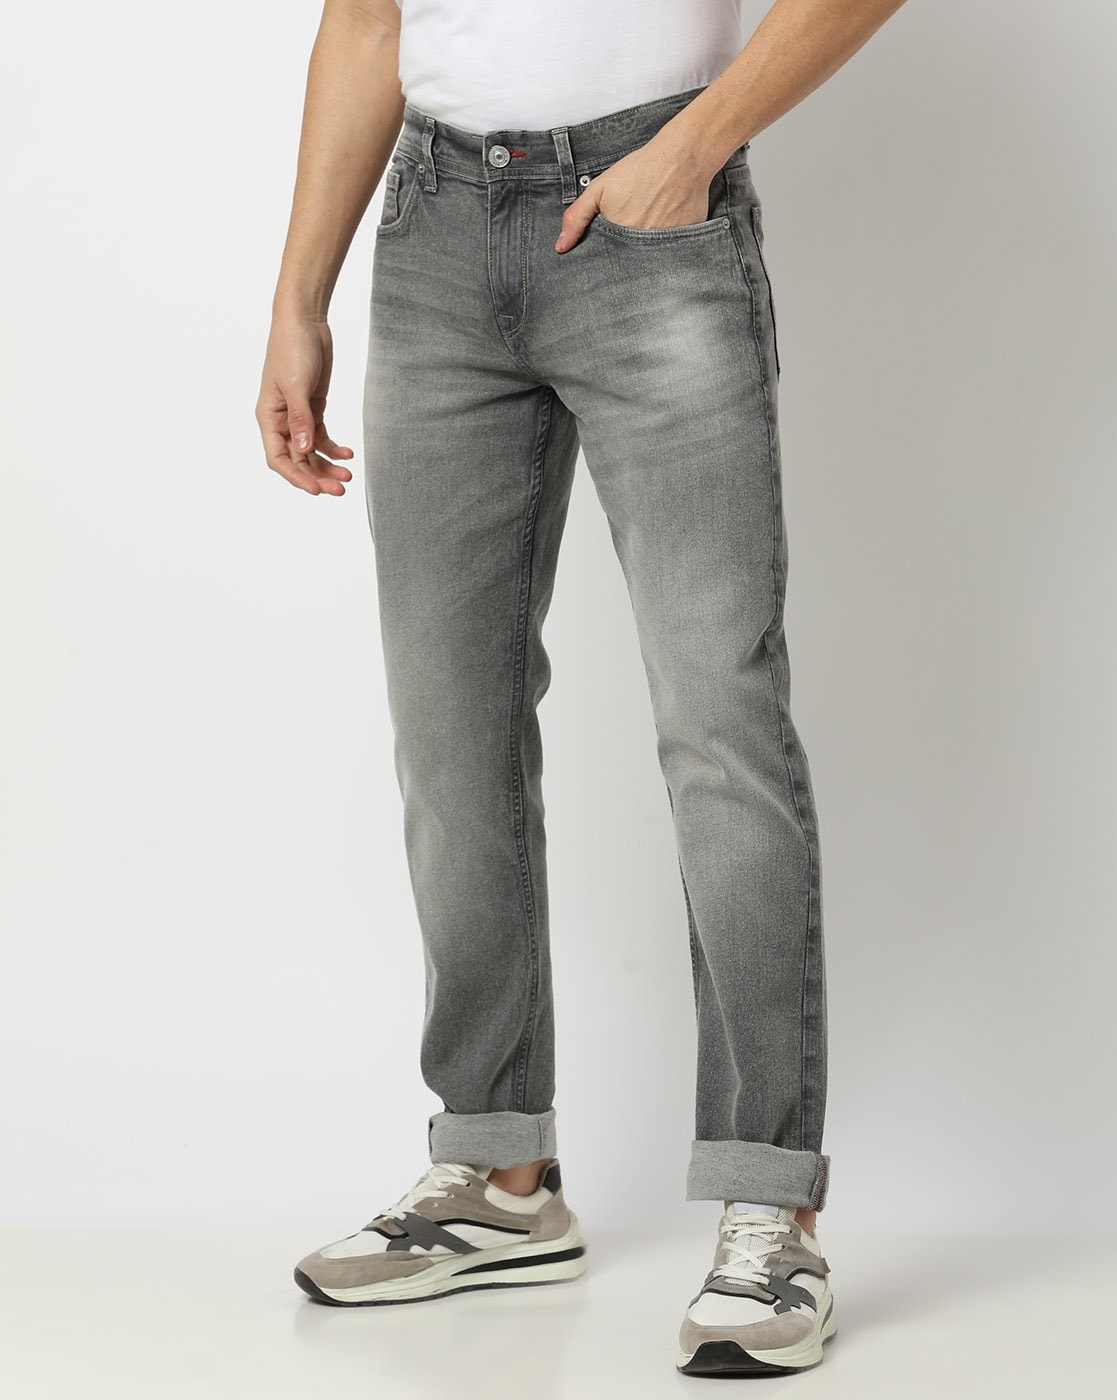 Buy Vie Ladies Slim Fit Dark Grey Jeans Online - Lulu Hypermarket India